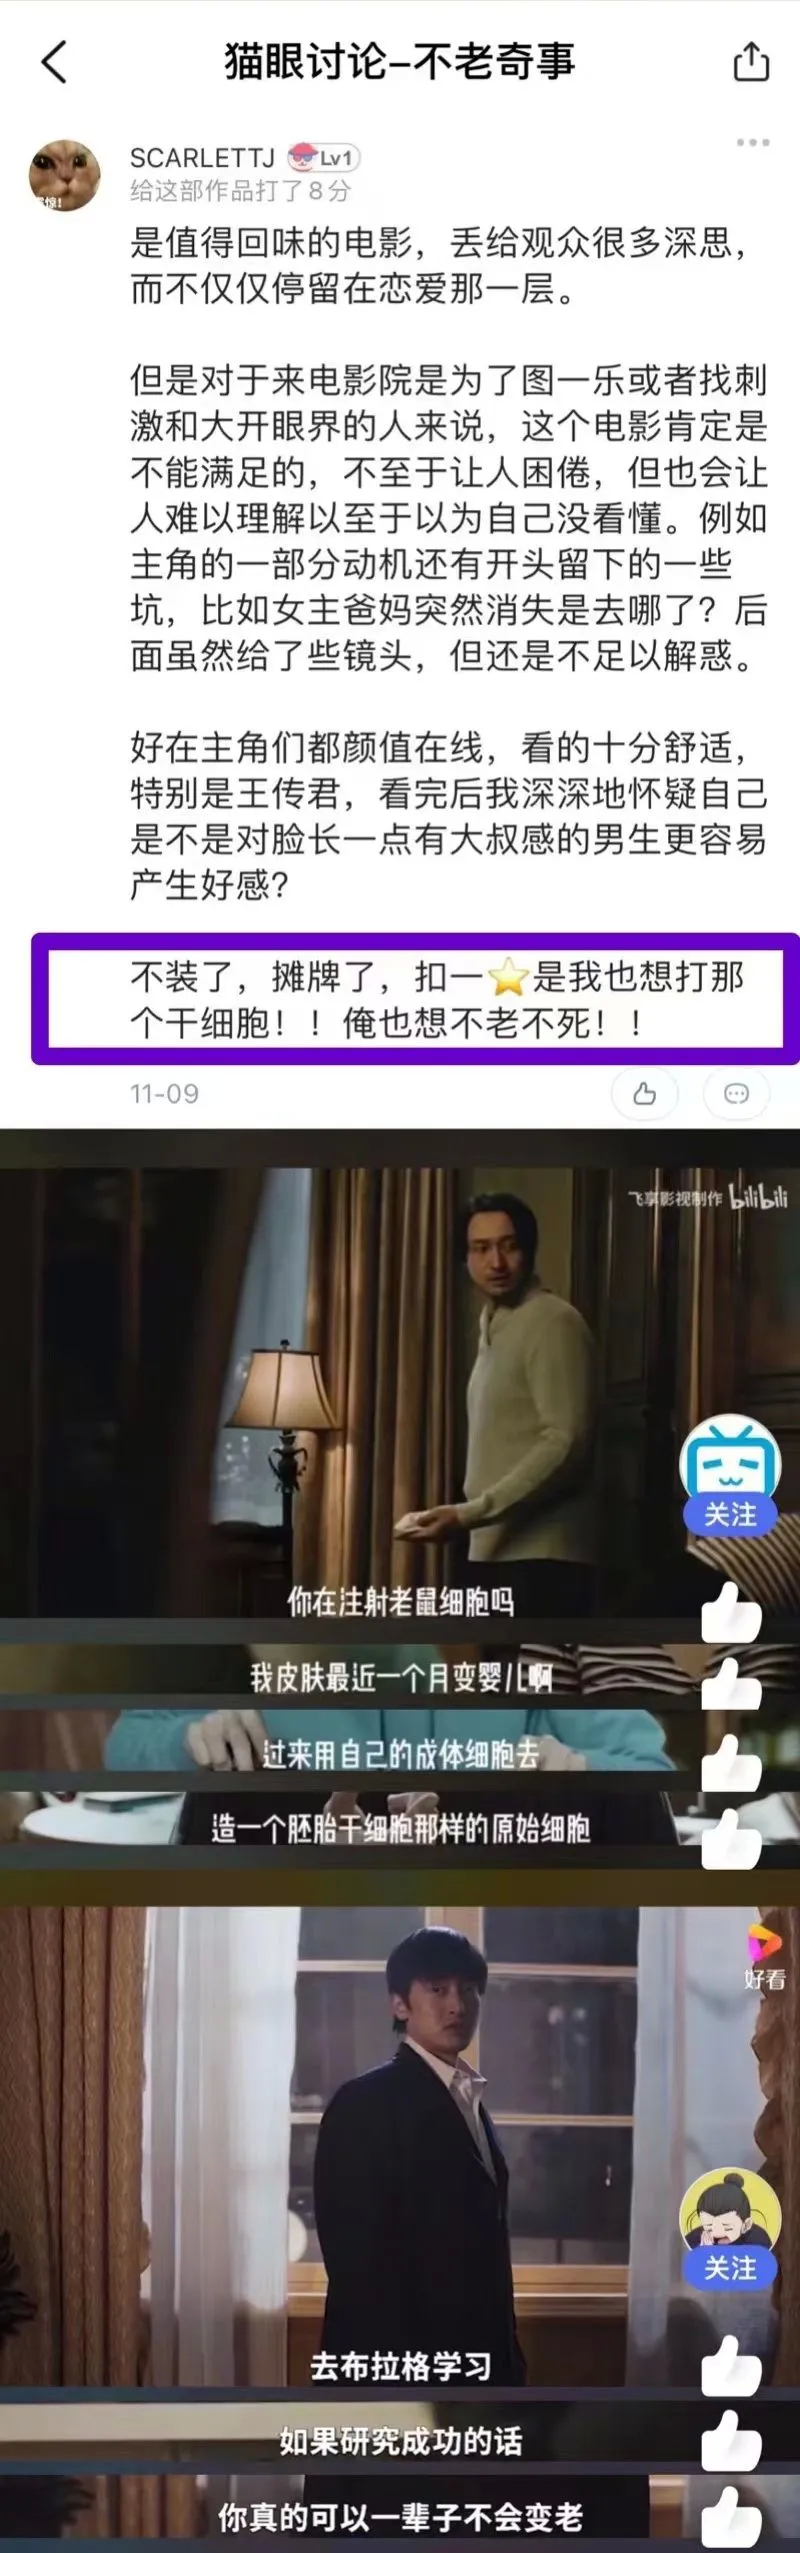 11月5日上映中国第一部干细胞技术相关主题的电影《不老奇事》都讲了